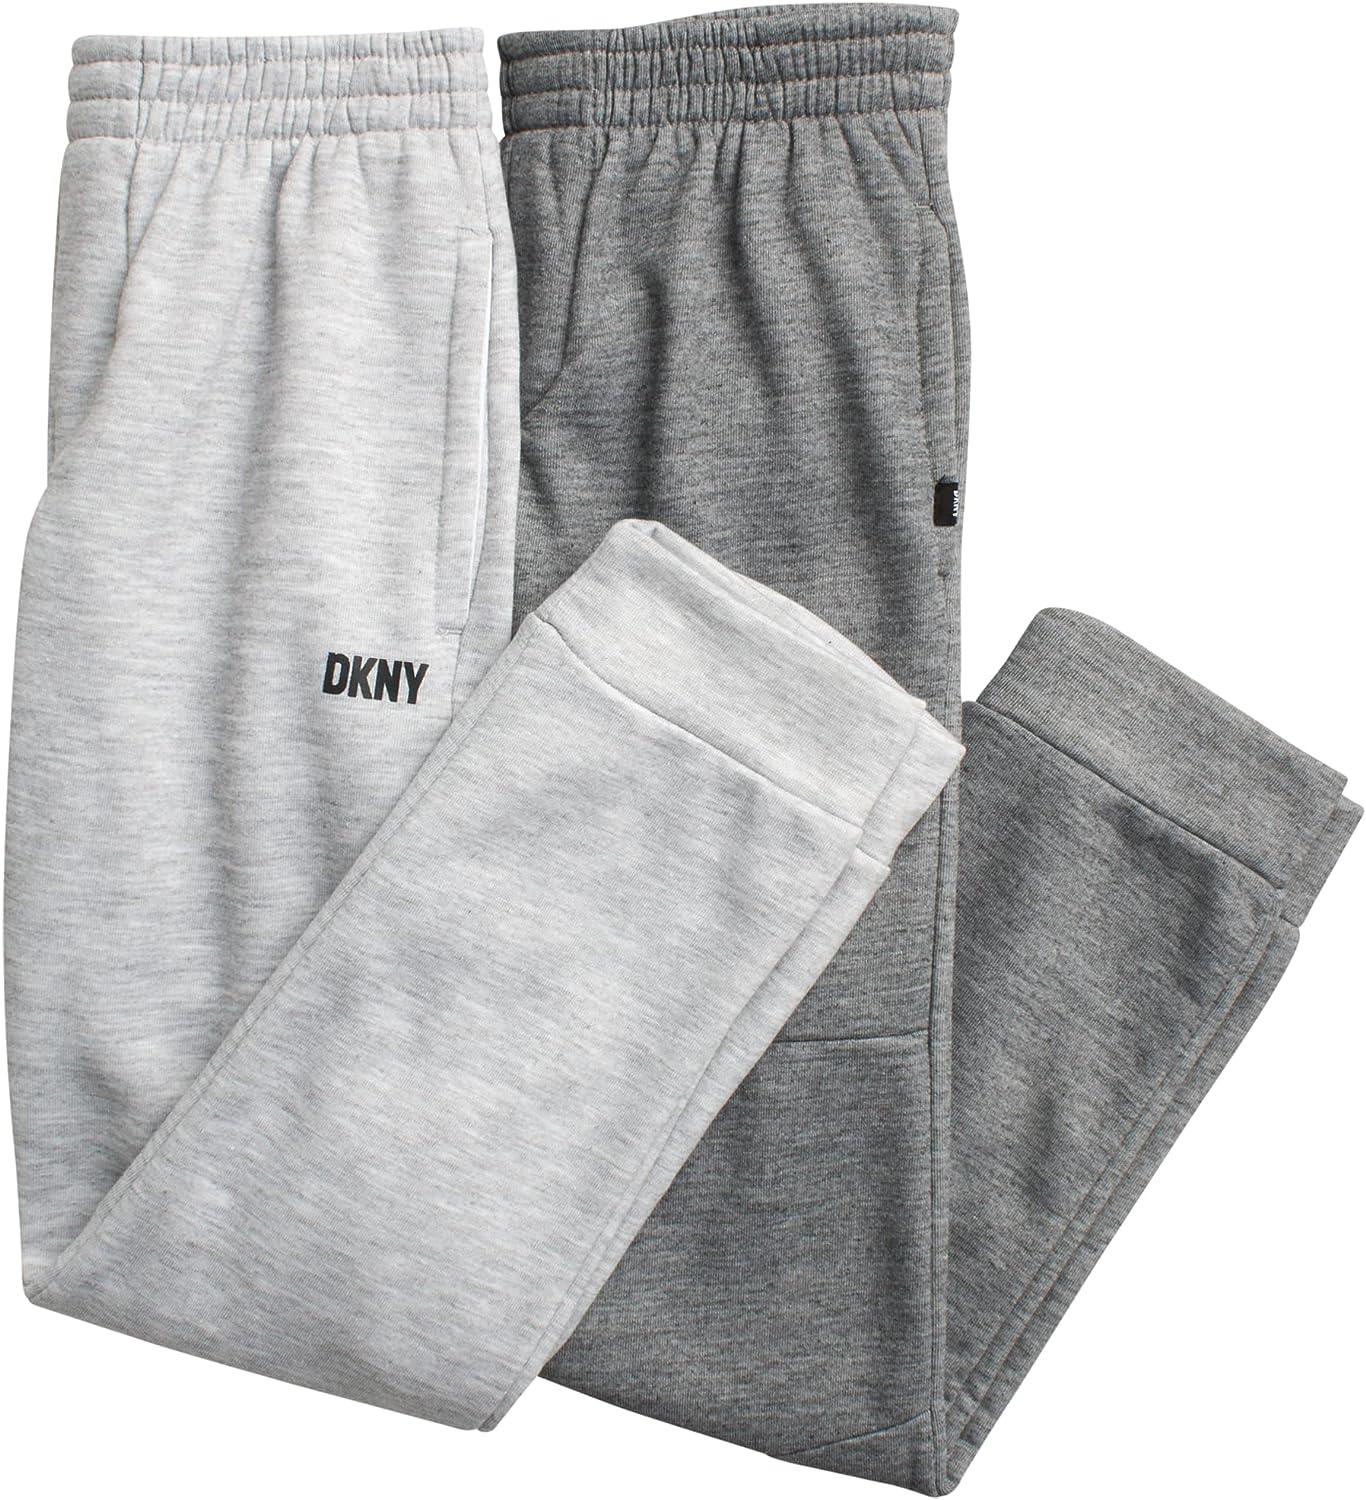 DKNY Boys Sweatpants 2 Pack Basic Active Fleece Jogger Pants (Size: 8-16)  Light Grey Heather 8